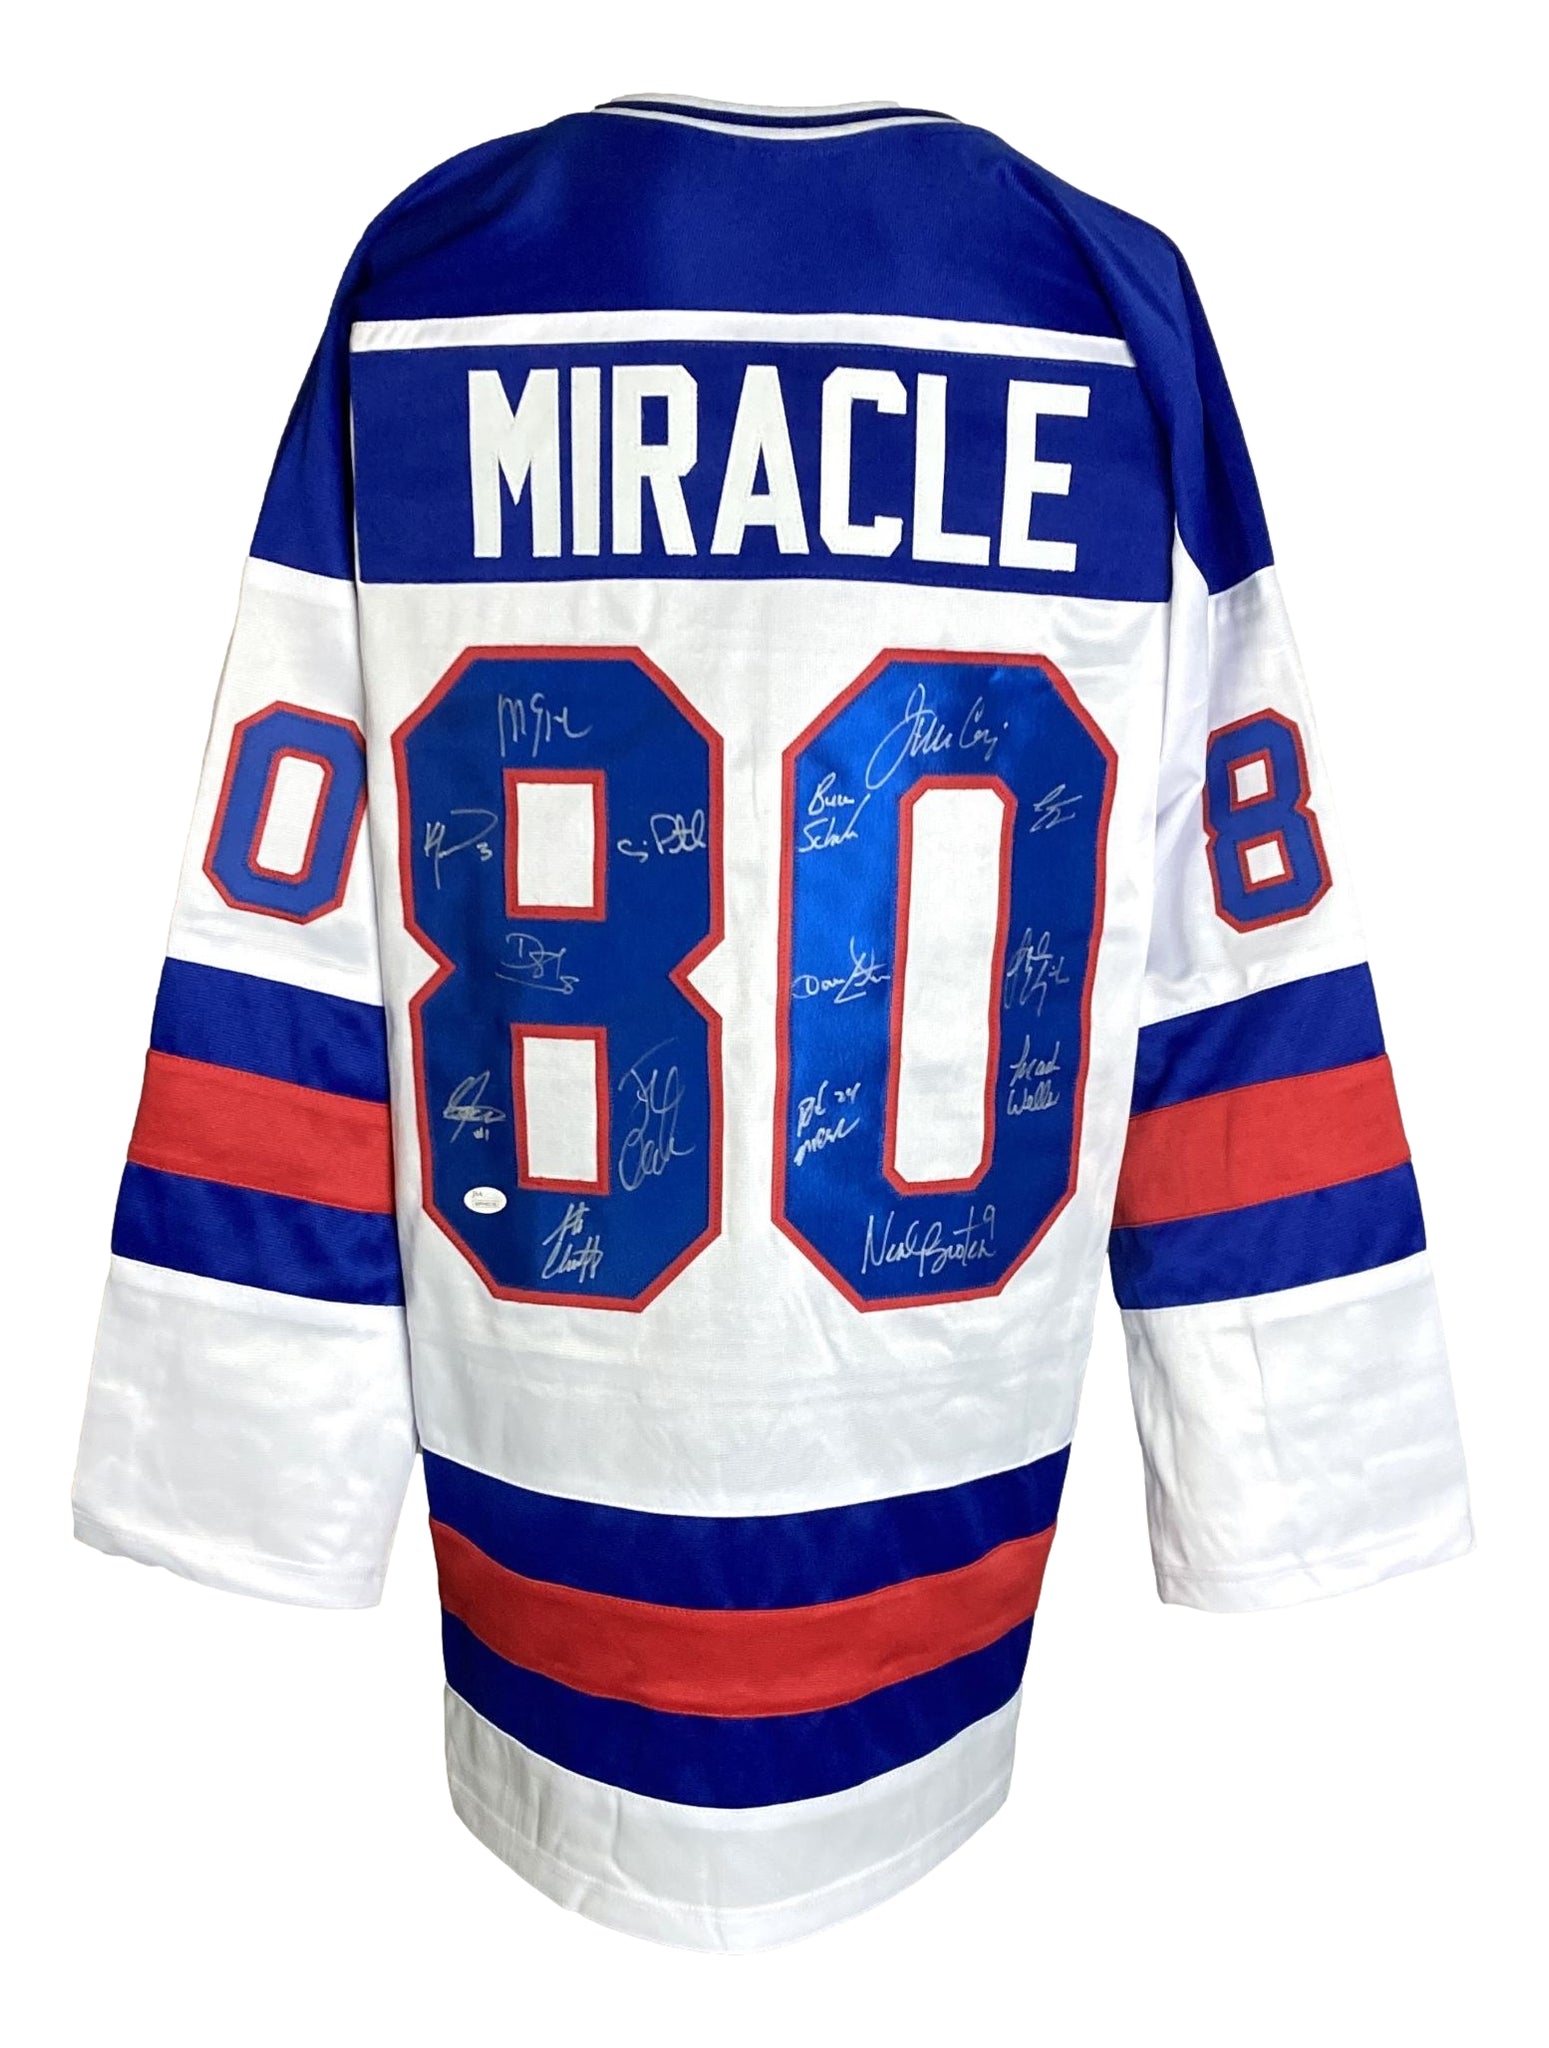 1980 Miracle On Ice Jerseys